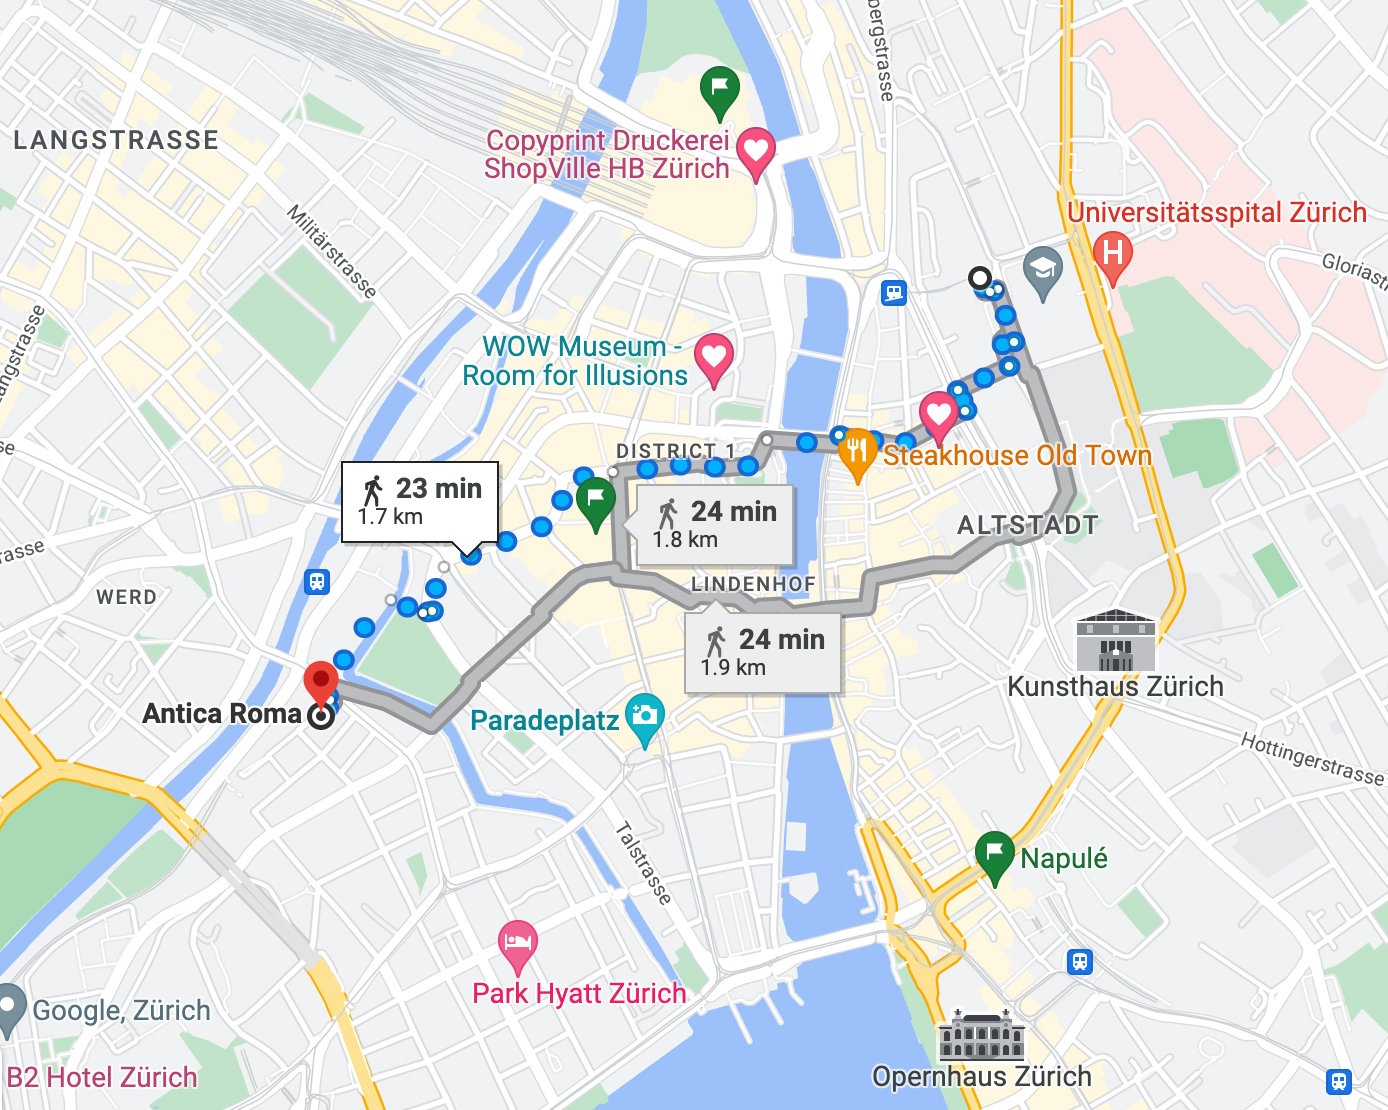 Figure 8: Google Maps Shortest Path to destination (Image by Author).